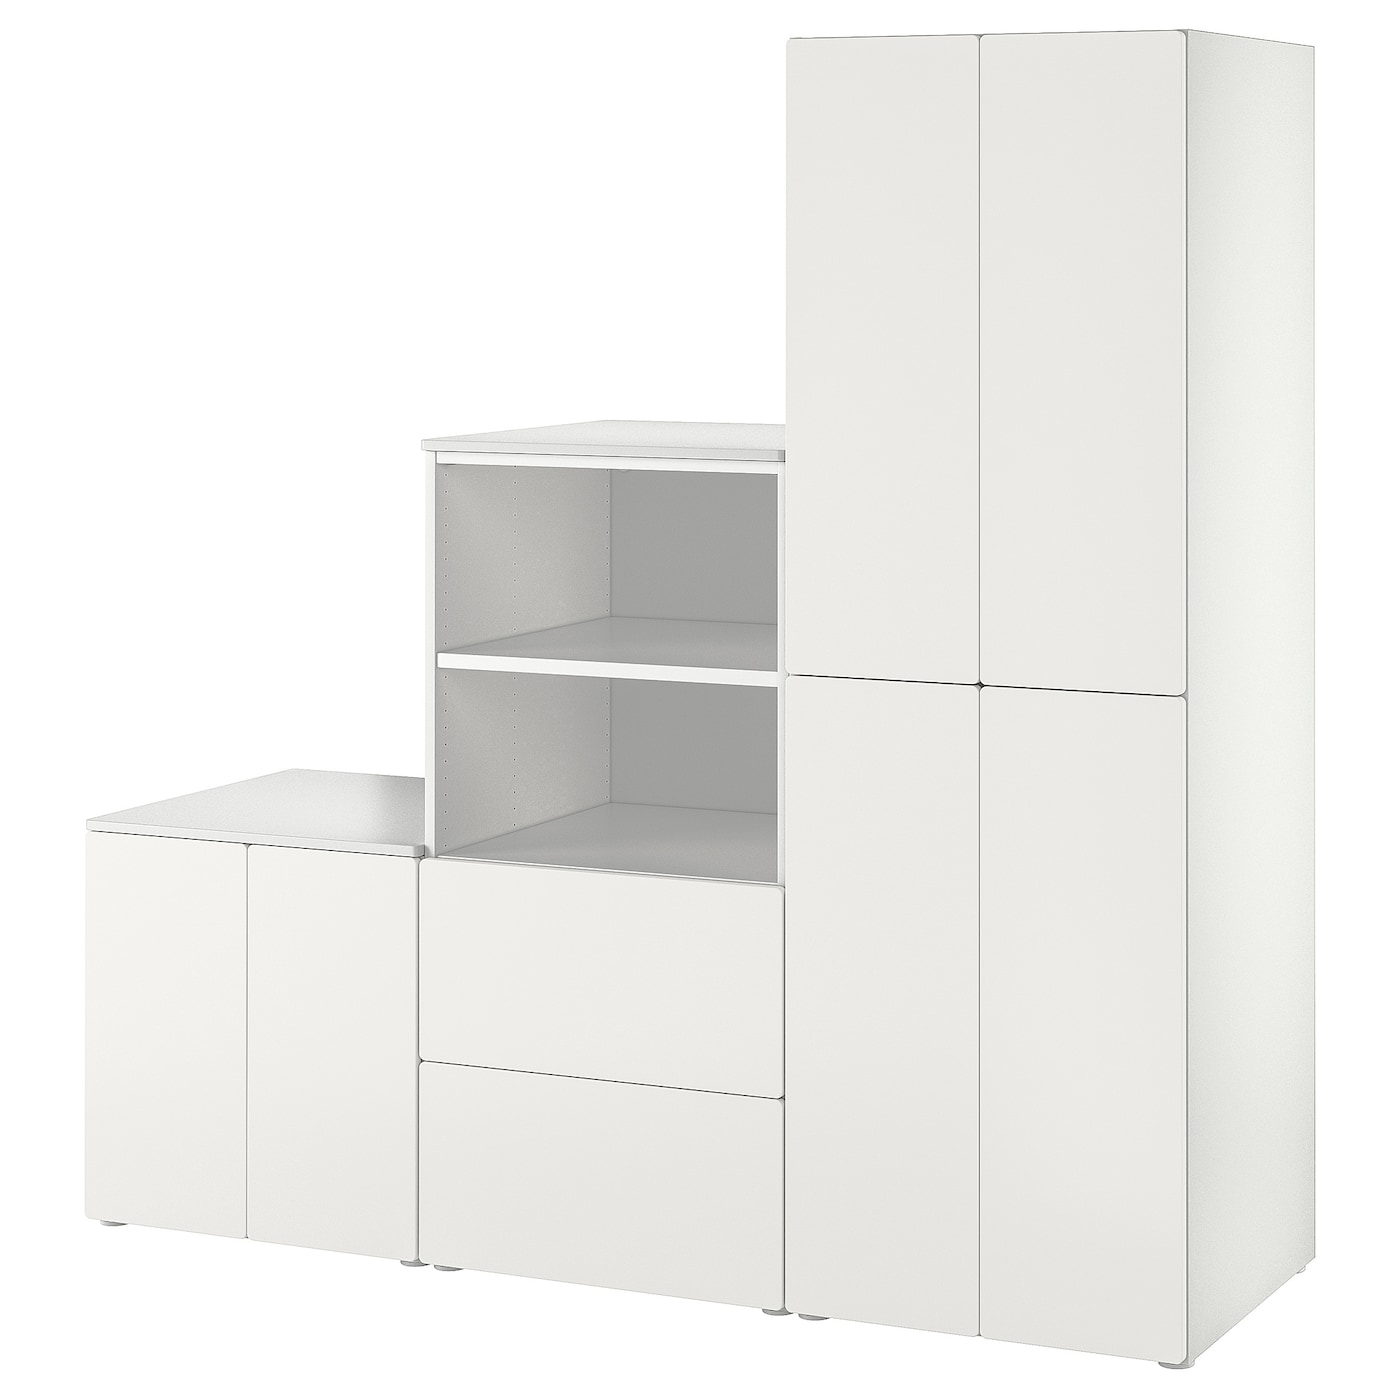 Детская гардеробная комбинация - IKEA PLATSA SMÅSTAD/SMASTAD, 181x57x180см, белый, ПЛАТСА СМОСТАД ИКЕА